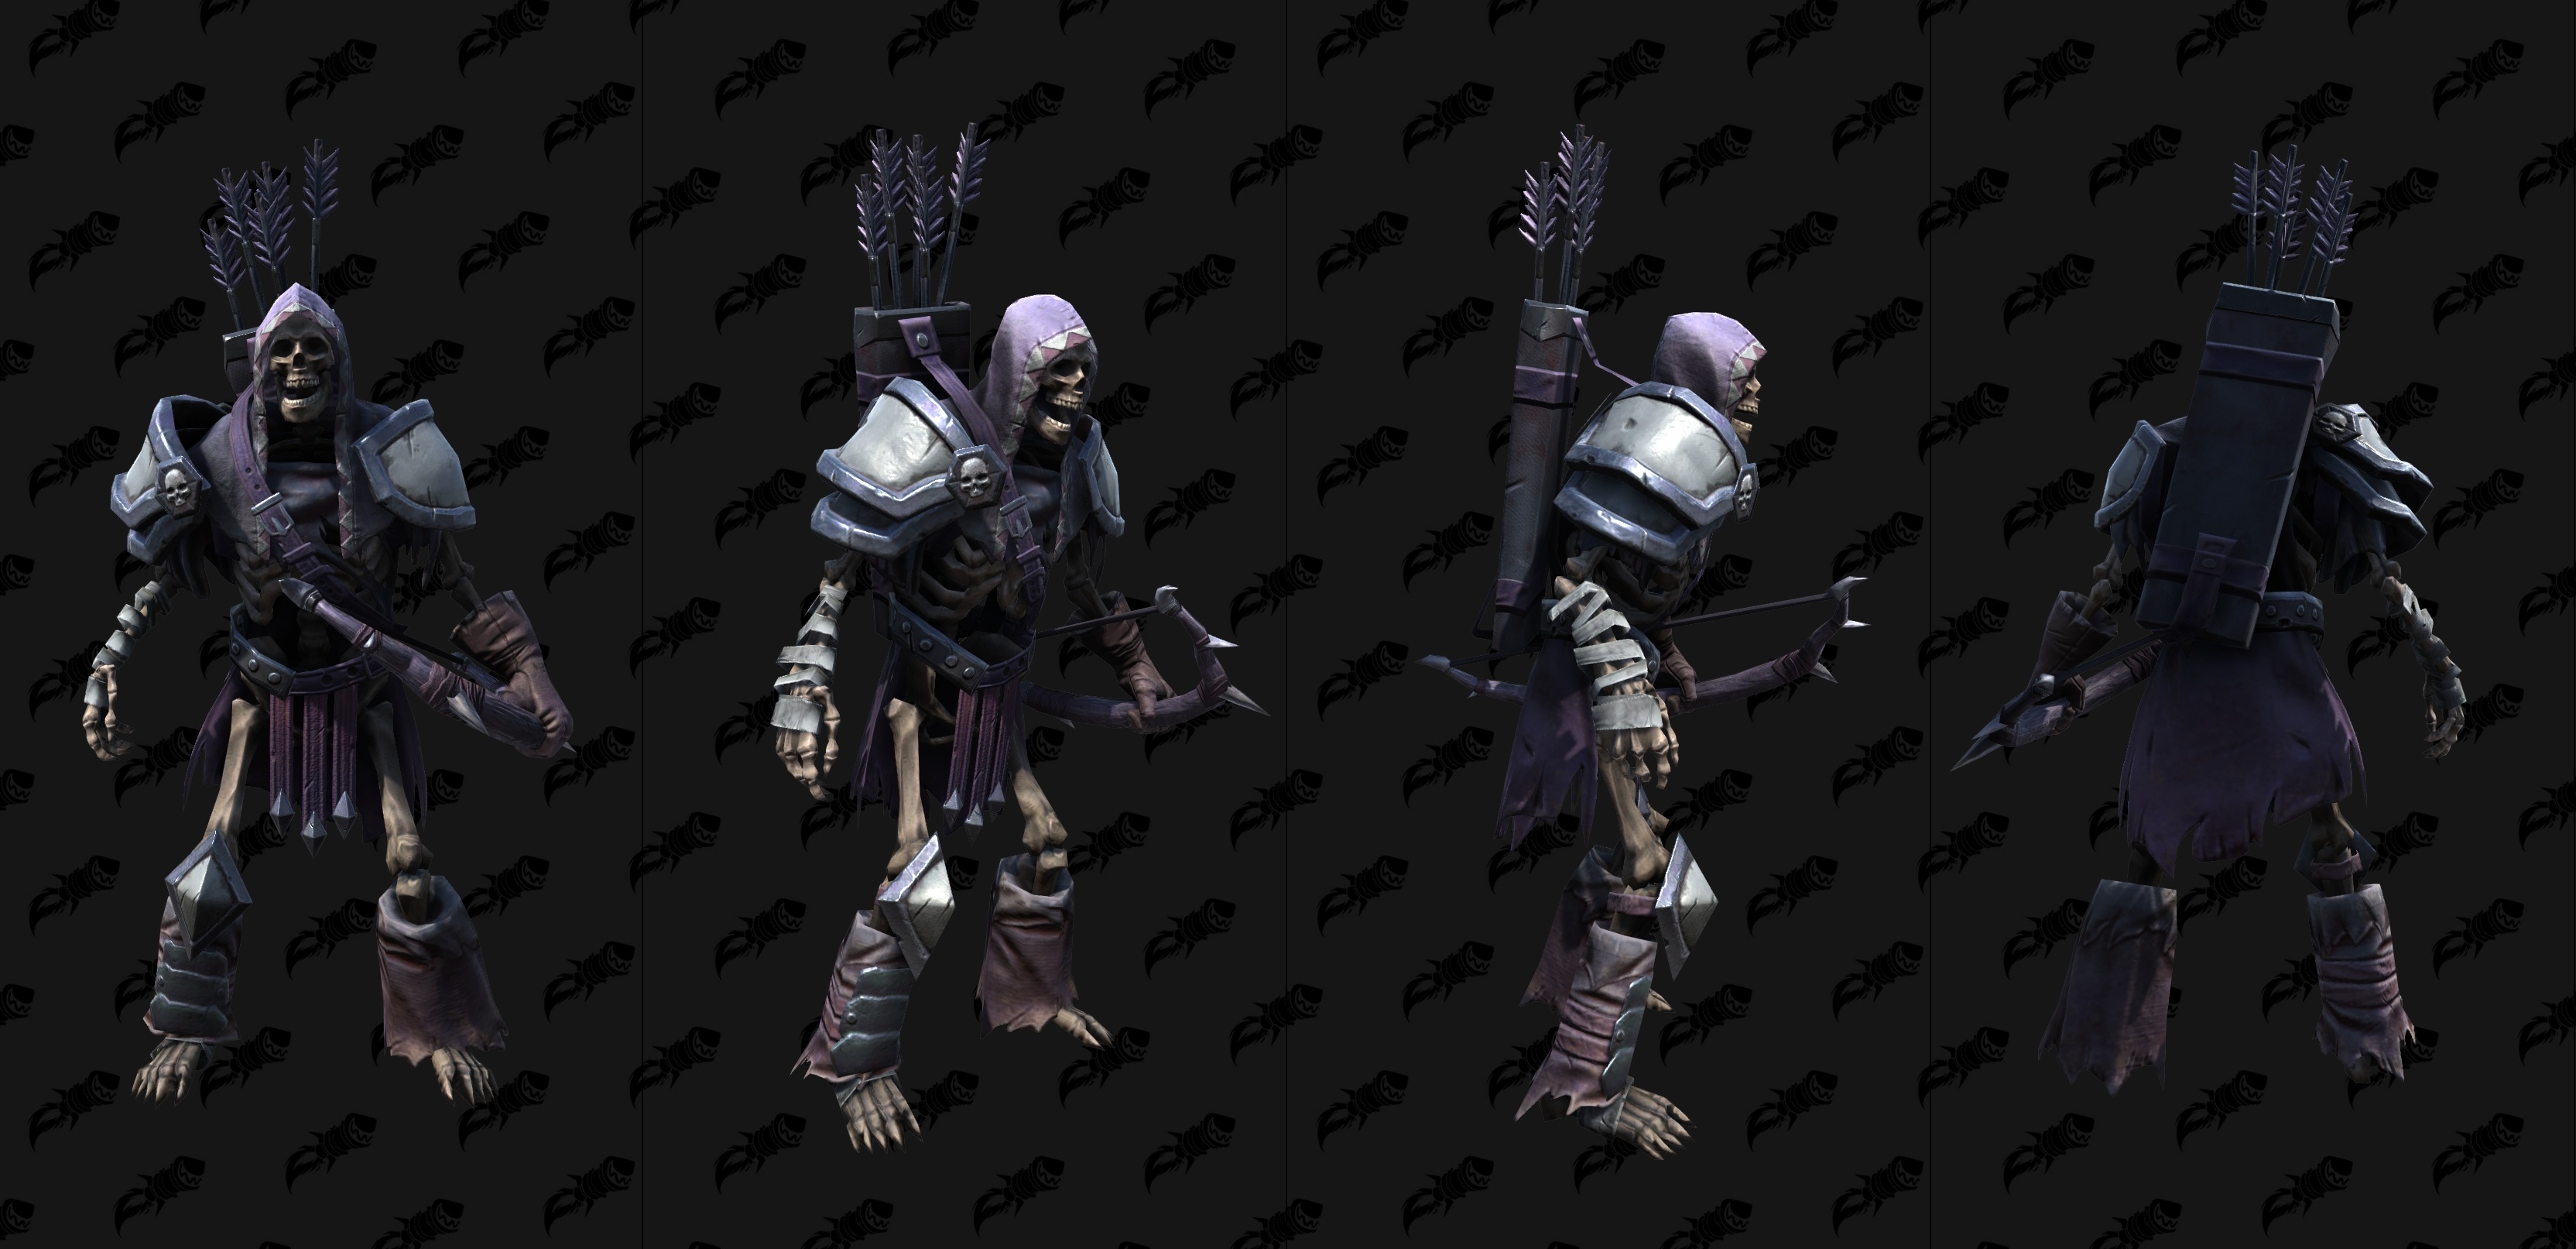 Крутые юниты. Скелет варкрафт 3. Скелет из варкрафта 3. Warcraft 3 модель скелета лучника. Warcraft 3 Reforged нежить.